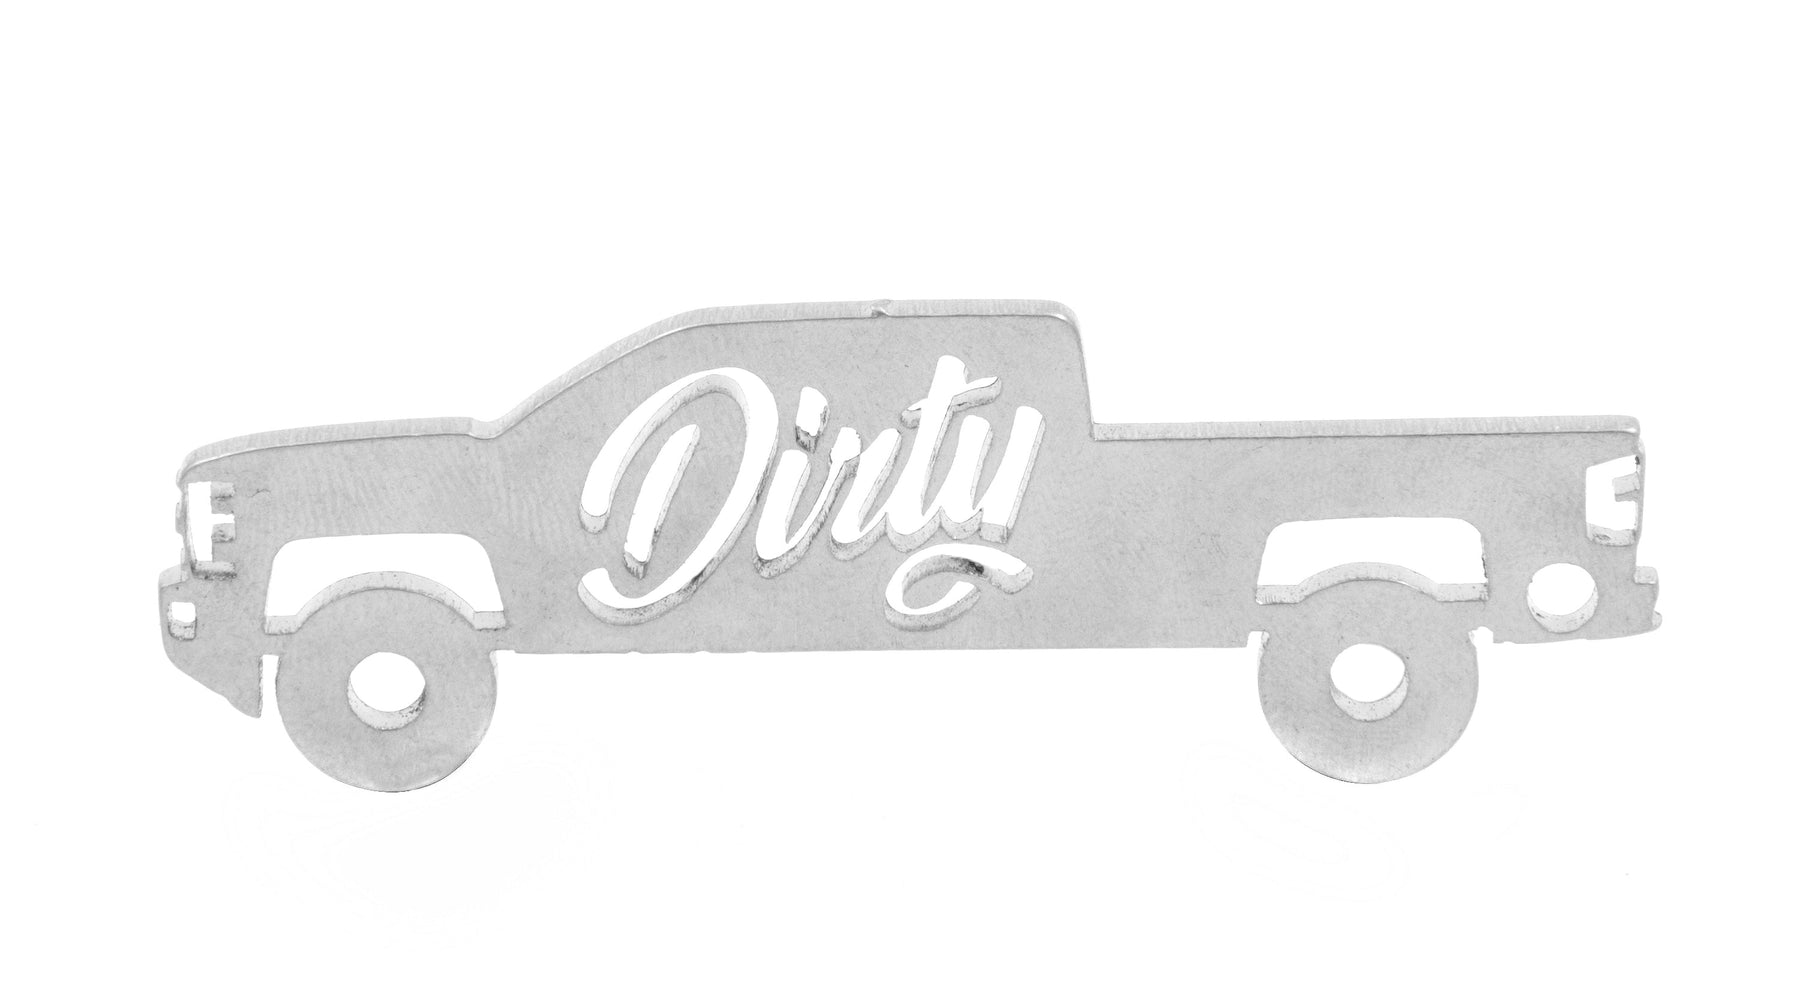 Dirty Duramax Silhouette Keychain (DDC-KEY-A080)-Keychain-Dirty Diesel Customs-DDC-KEY-0423-Dirty Diesel Customs